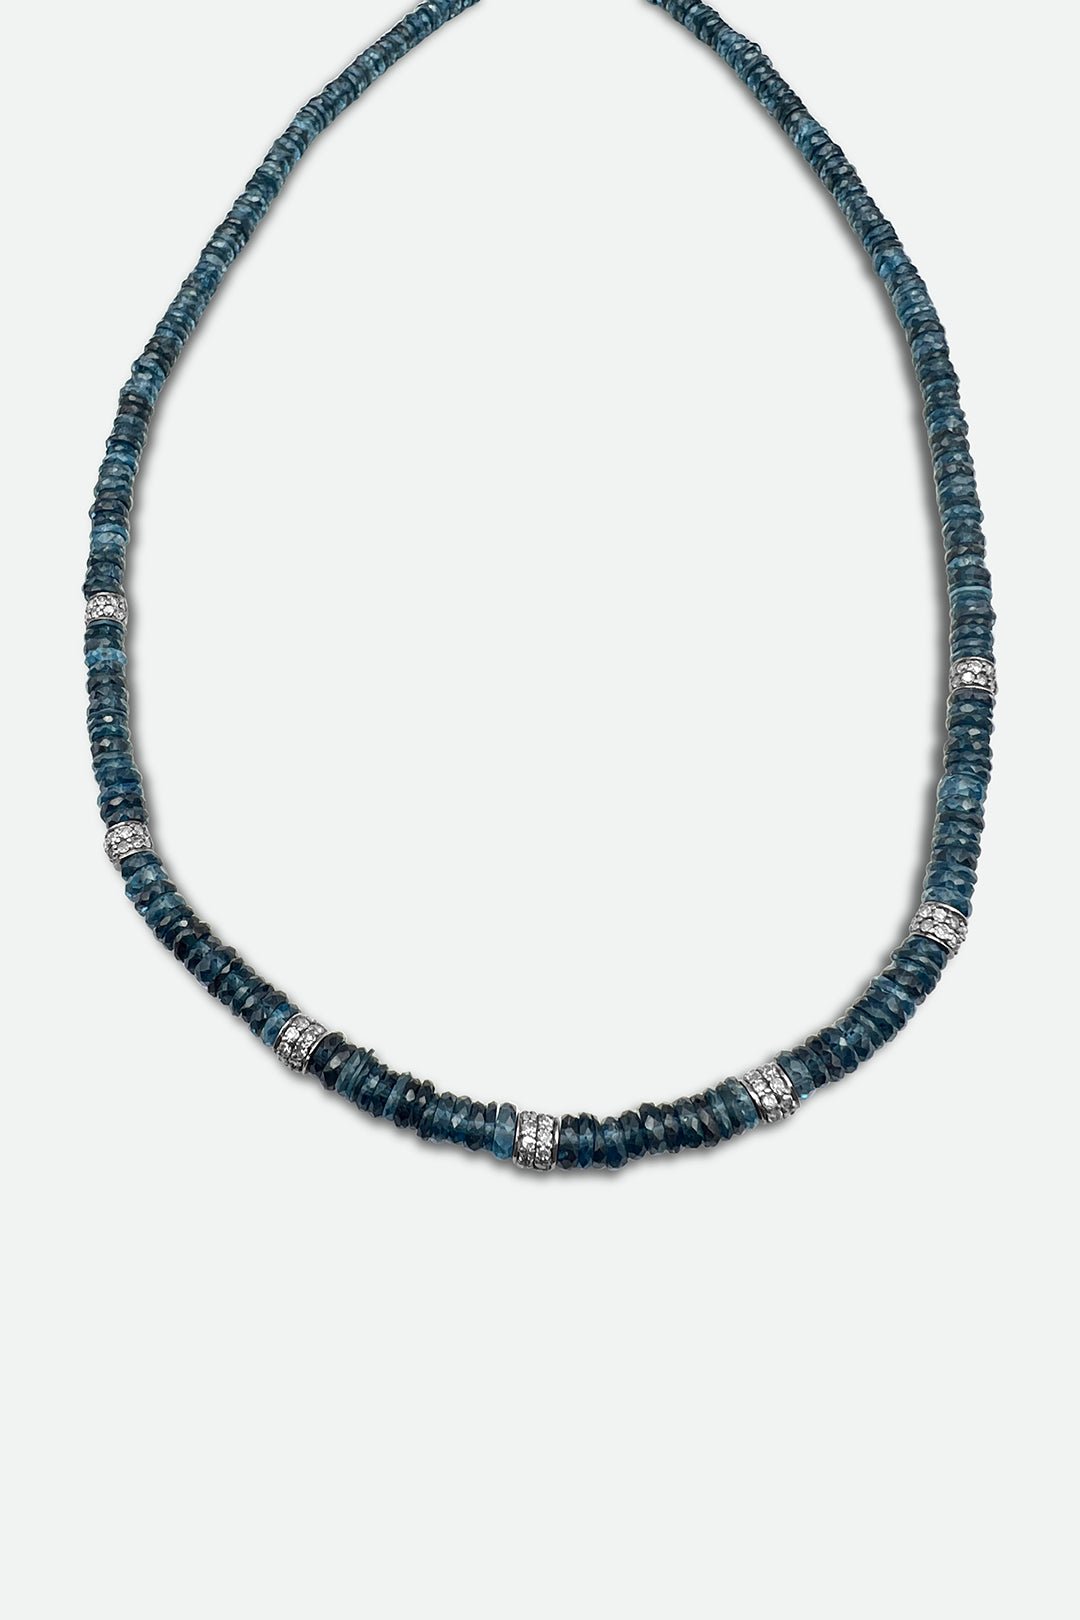 Blue Topaz Heishi Necklace with Diamond Beads - Jarbo